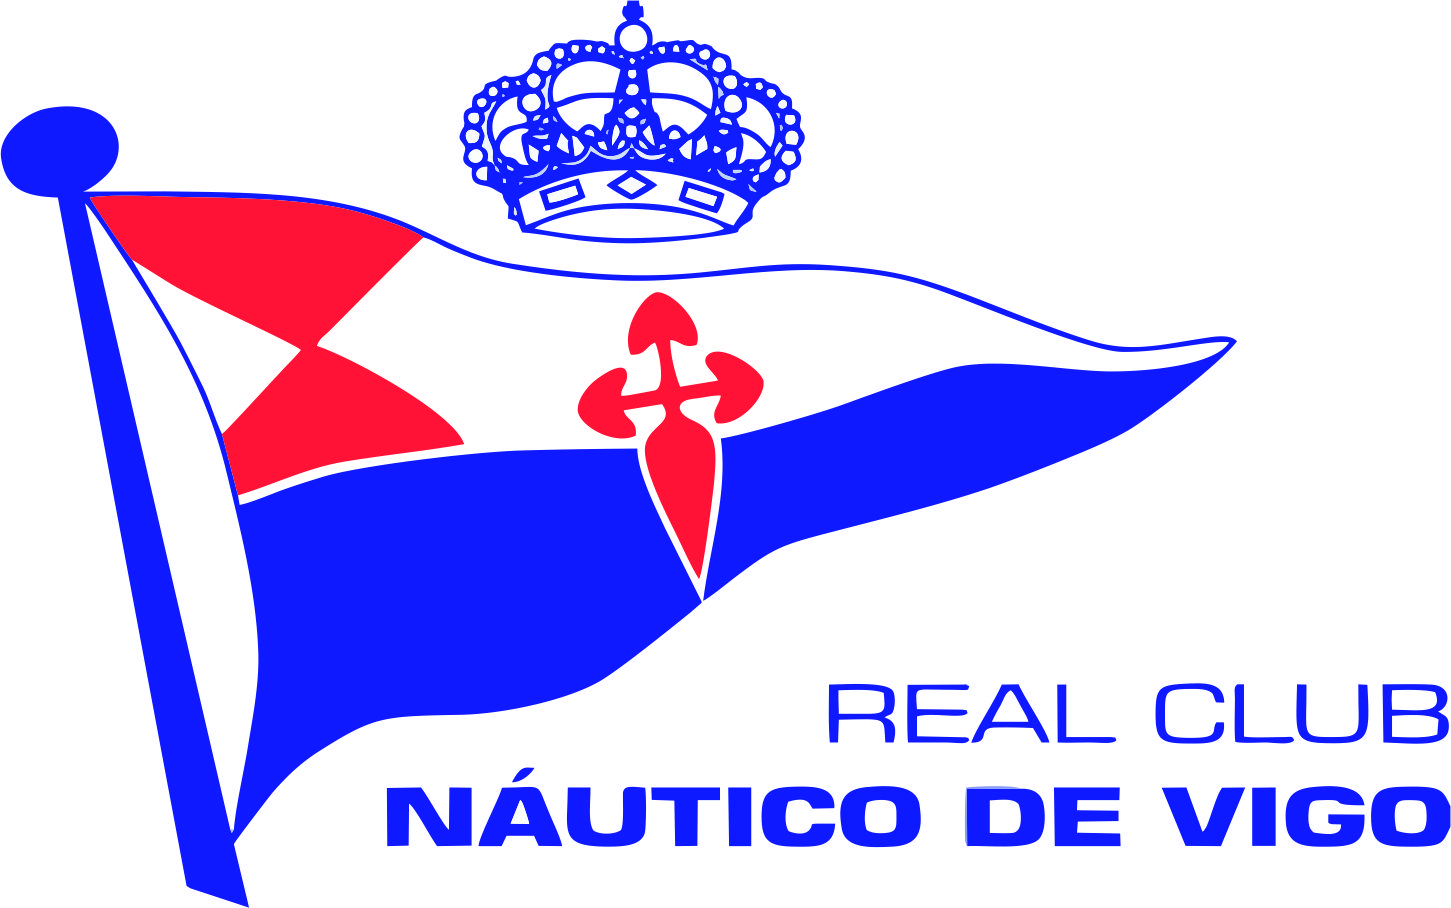 REAL CLUB NÁUTICO DE VIGO